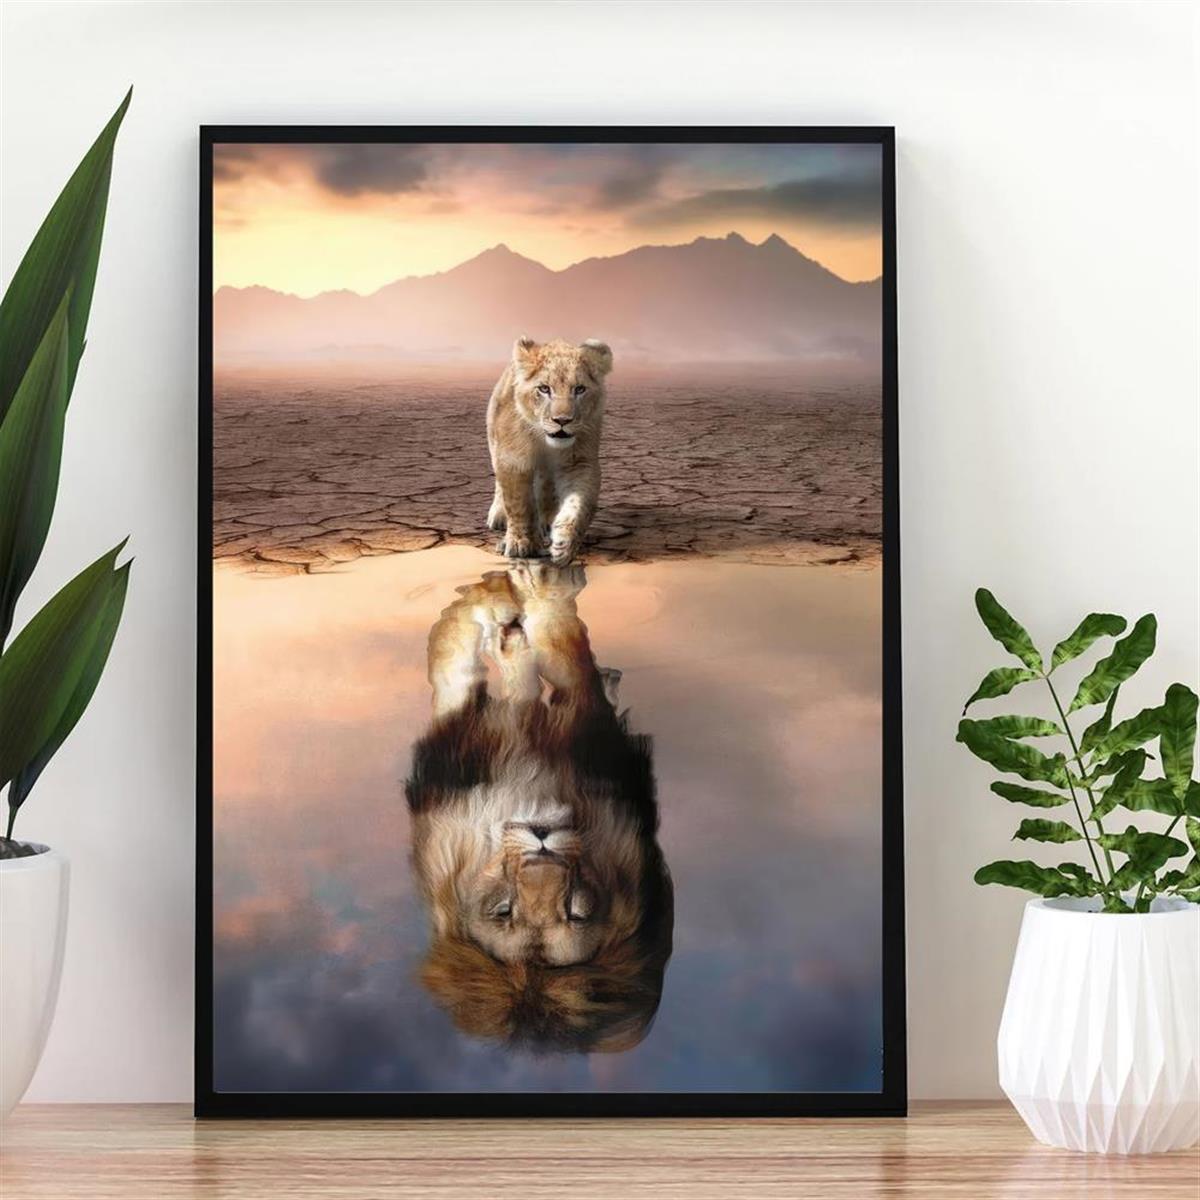 ライオンが水面に映る美しい風景の絵が描かれたキャンバスポスターです